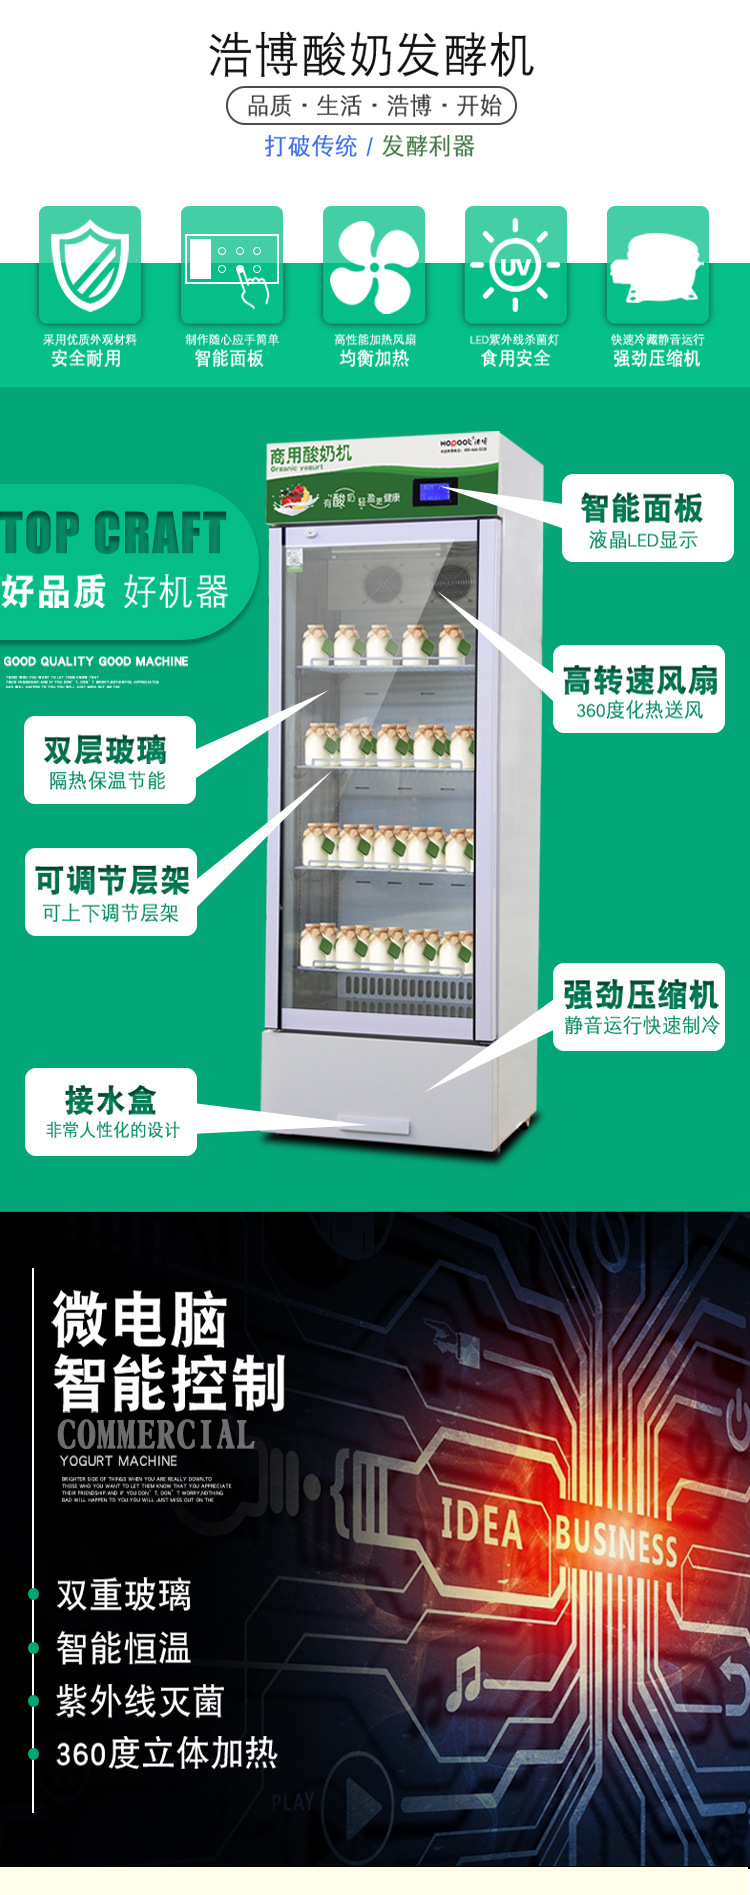 浩博商用酸奶机 杀菌发酵冷藏机 全自动商用酸奶机 水果捞设备示例图6